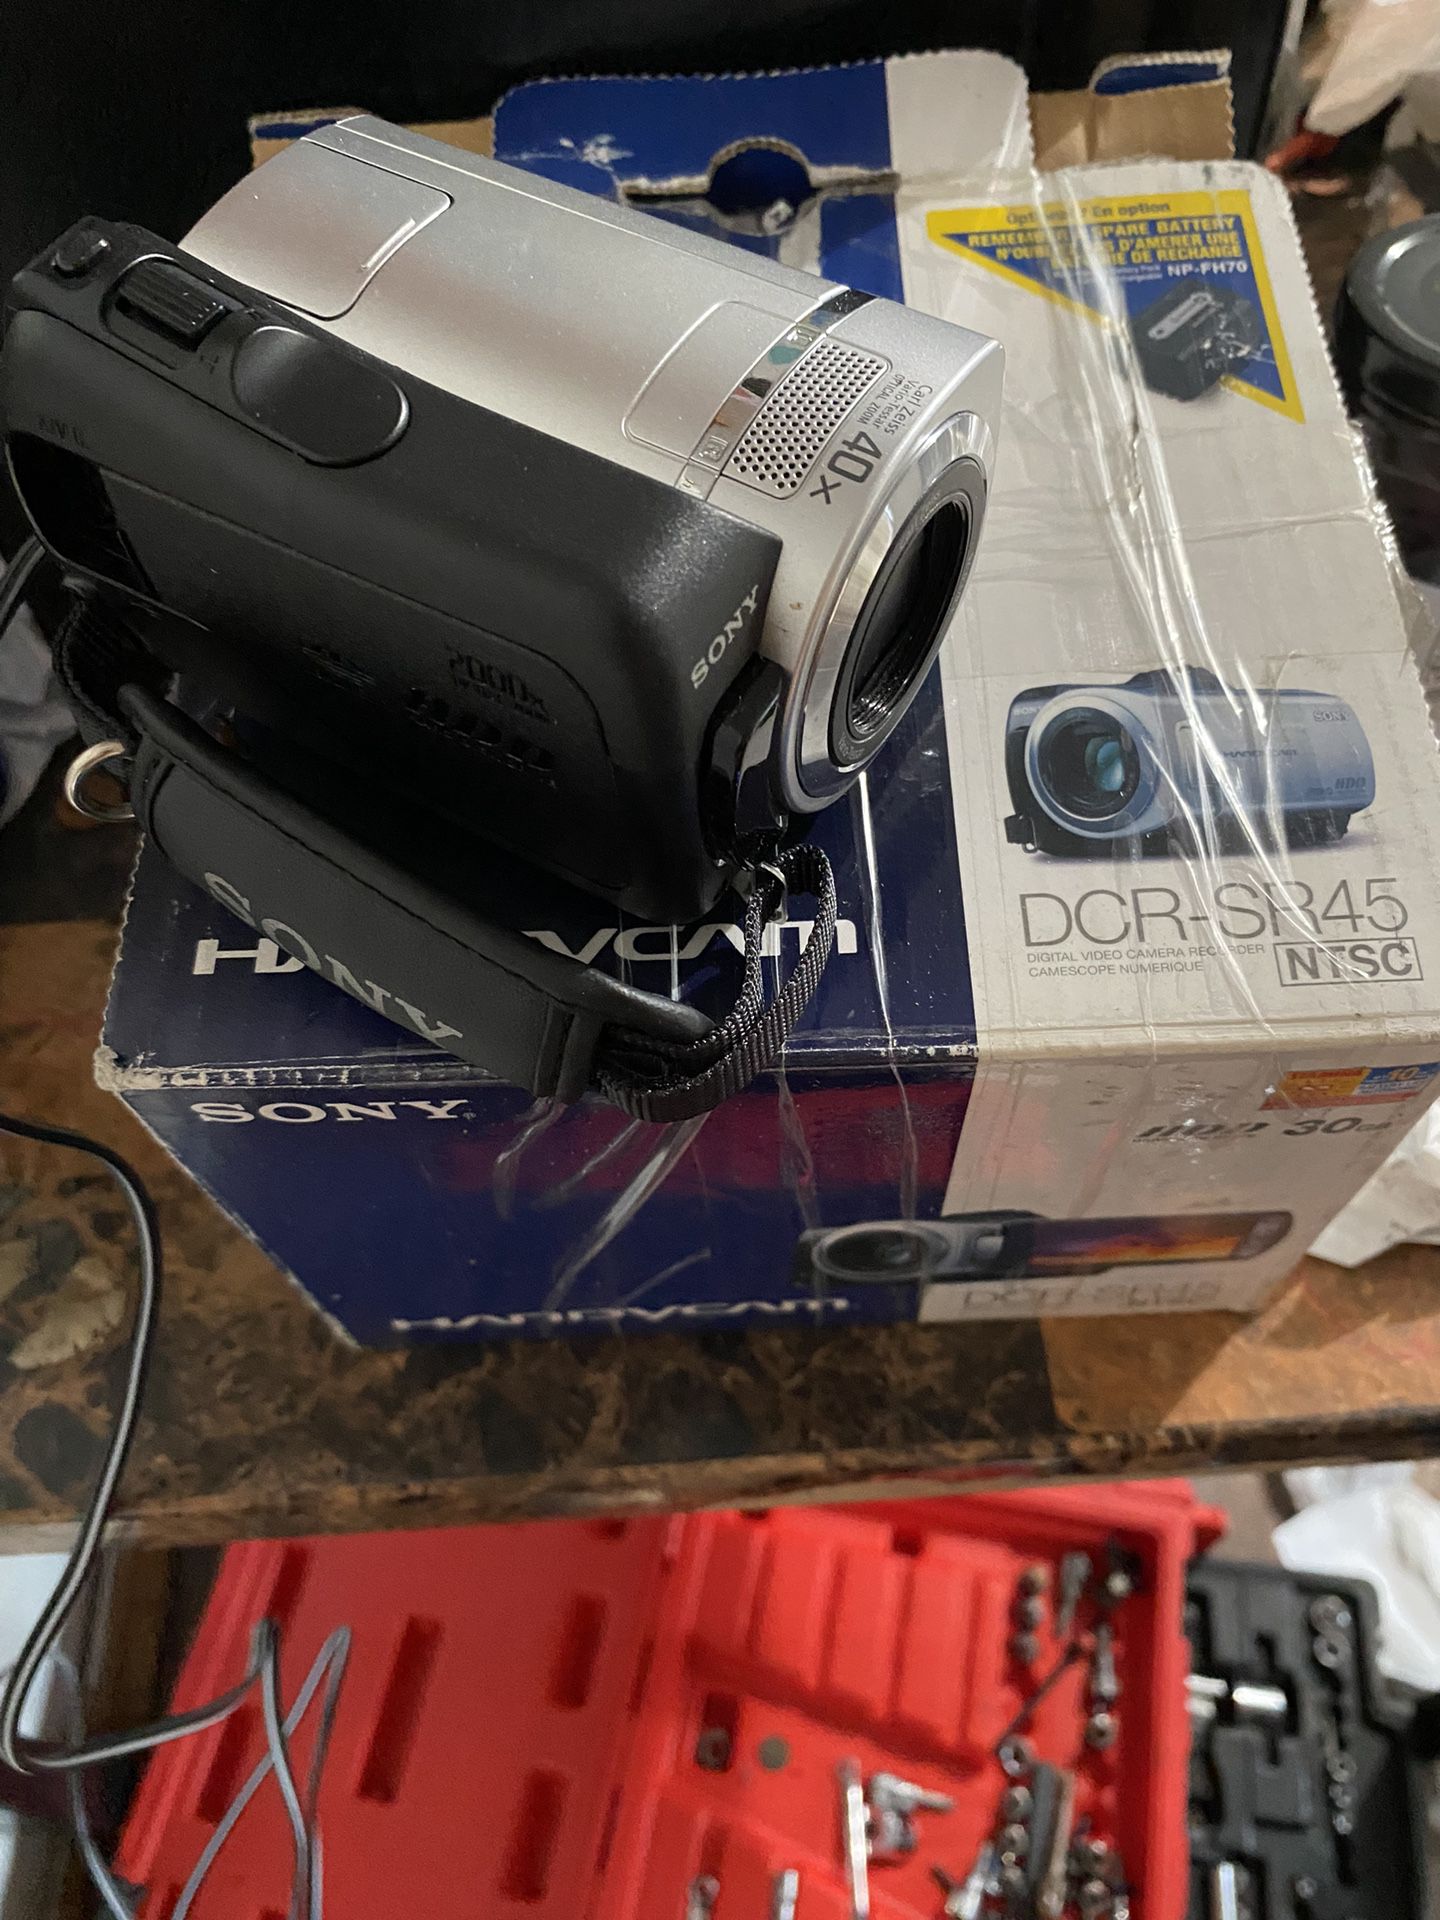 Sony Handycam DCR-SR45